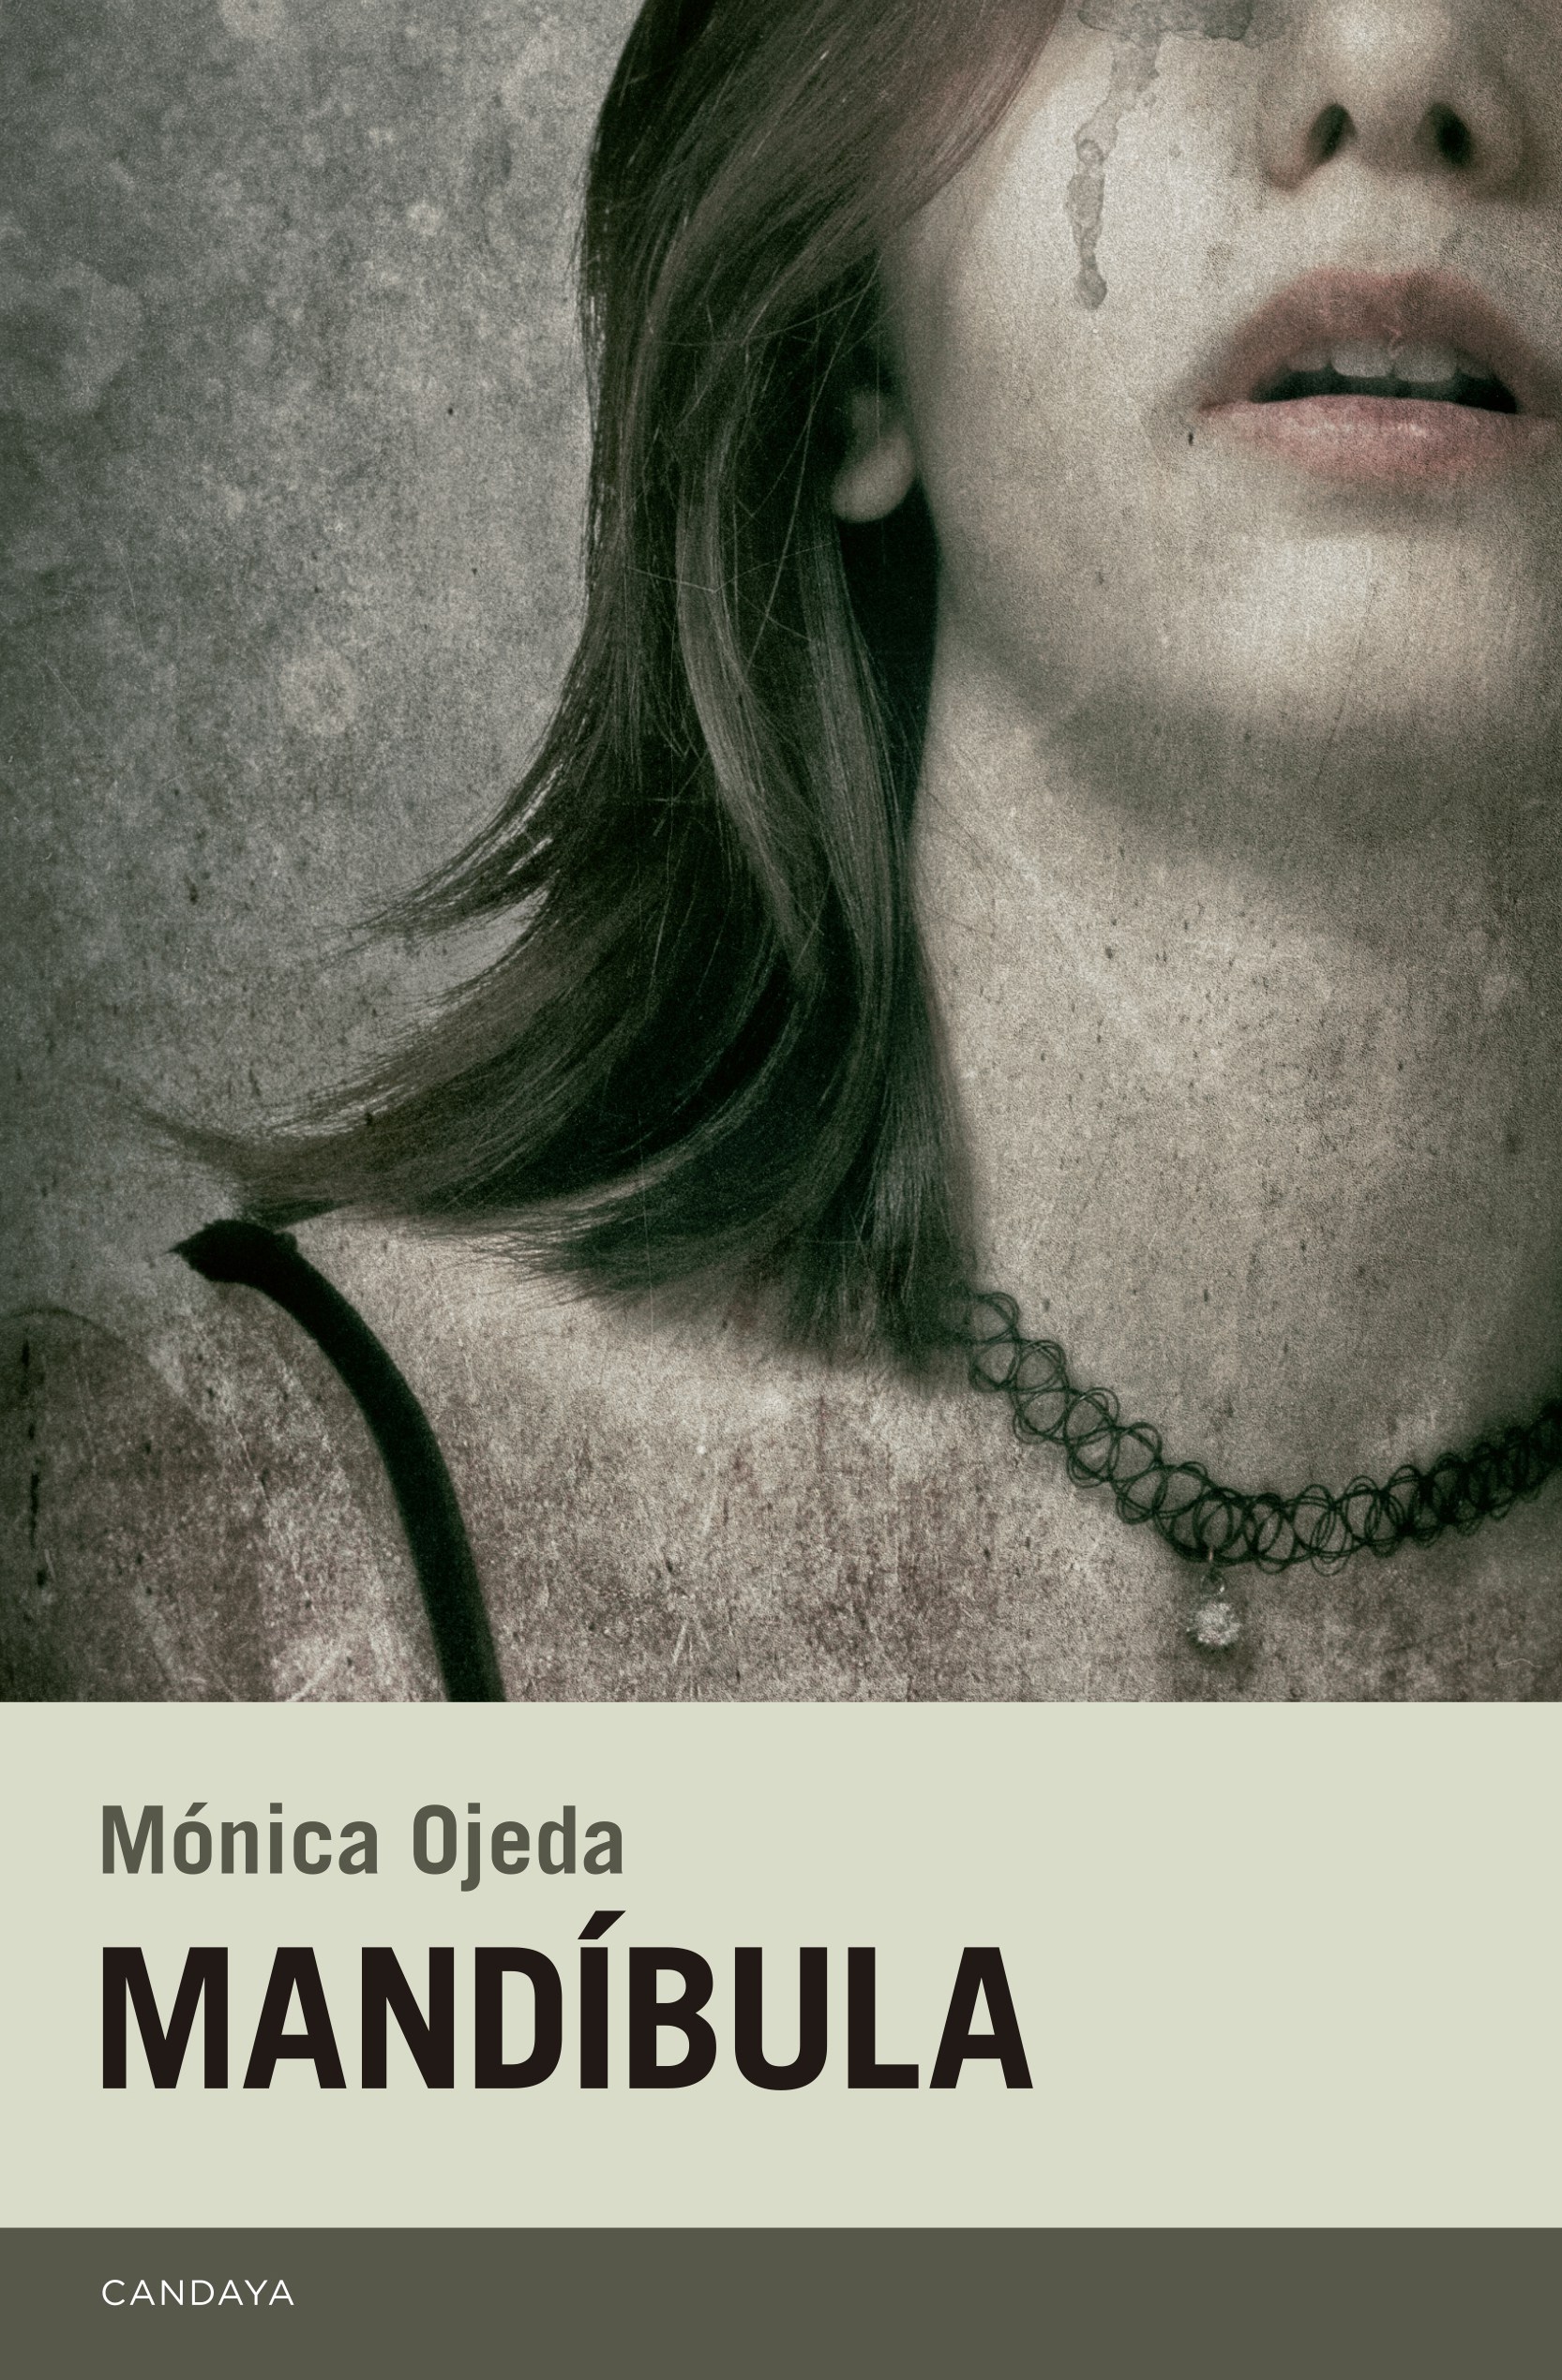 La indefensión: el mundo perturbador de "Mandíbula", de Mónica Ojeda